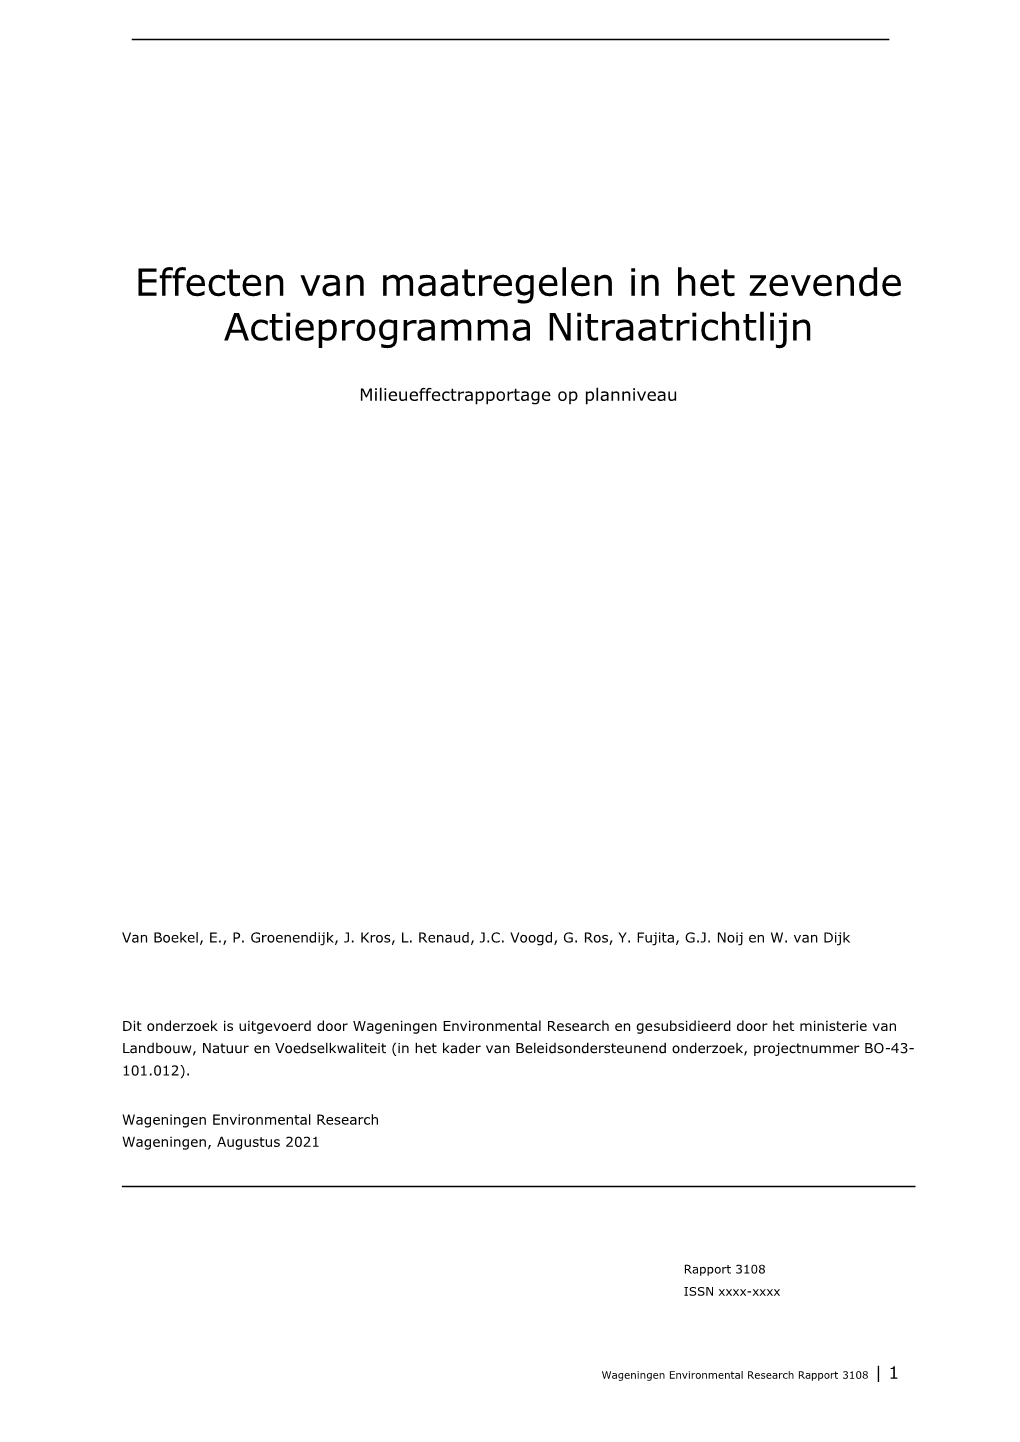 Effecten Van Maatregelen in Het Zevende Actieprogramma Nitraatrichtlijn